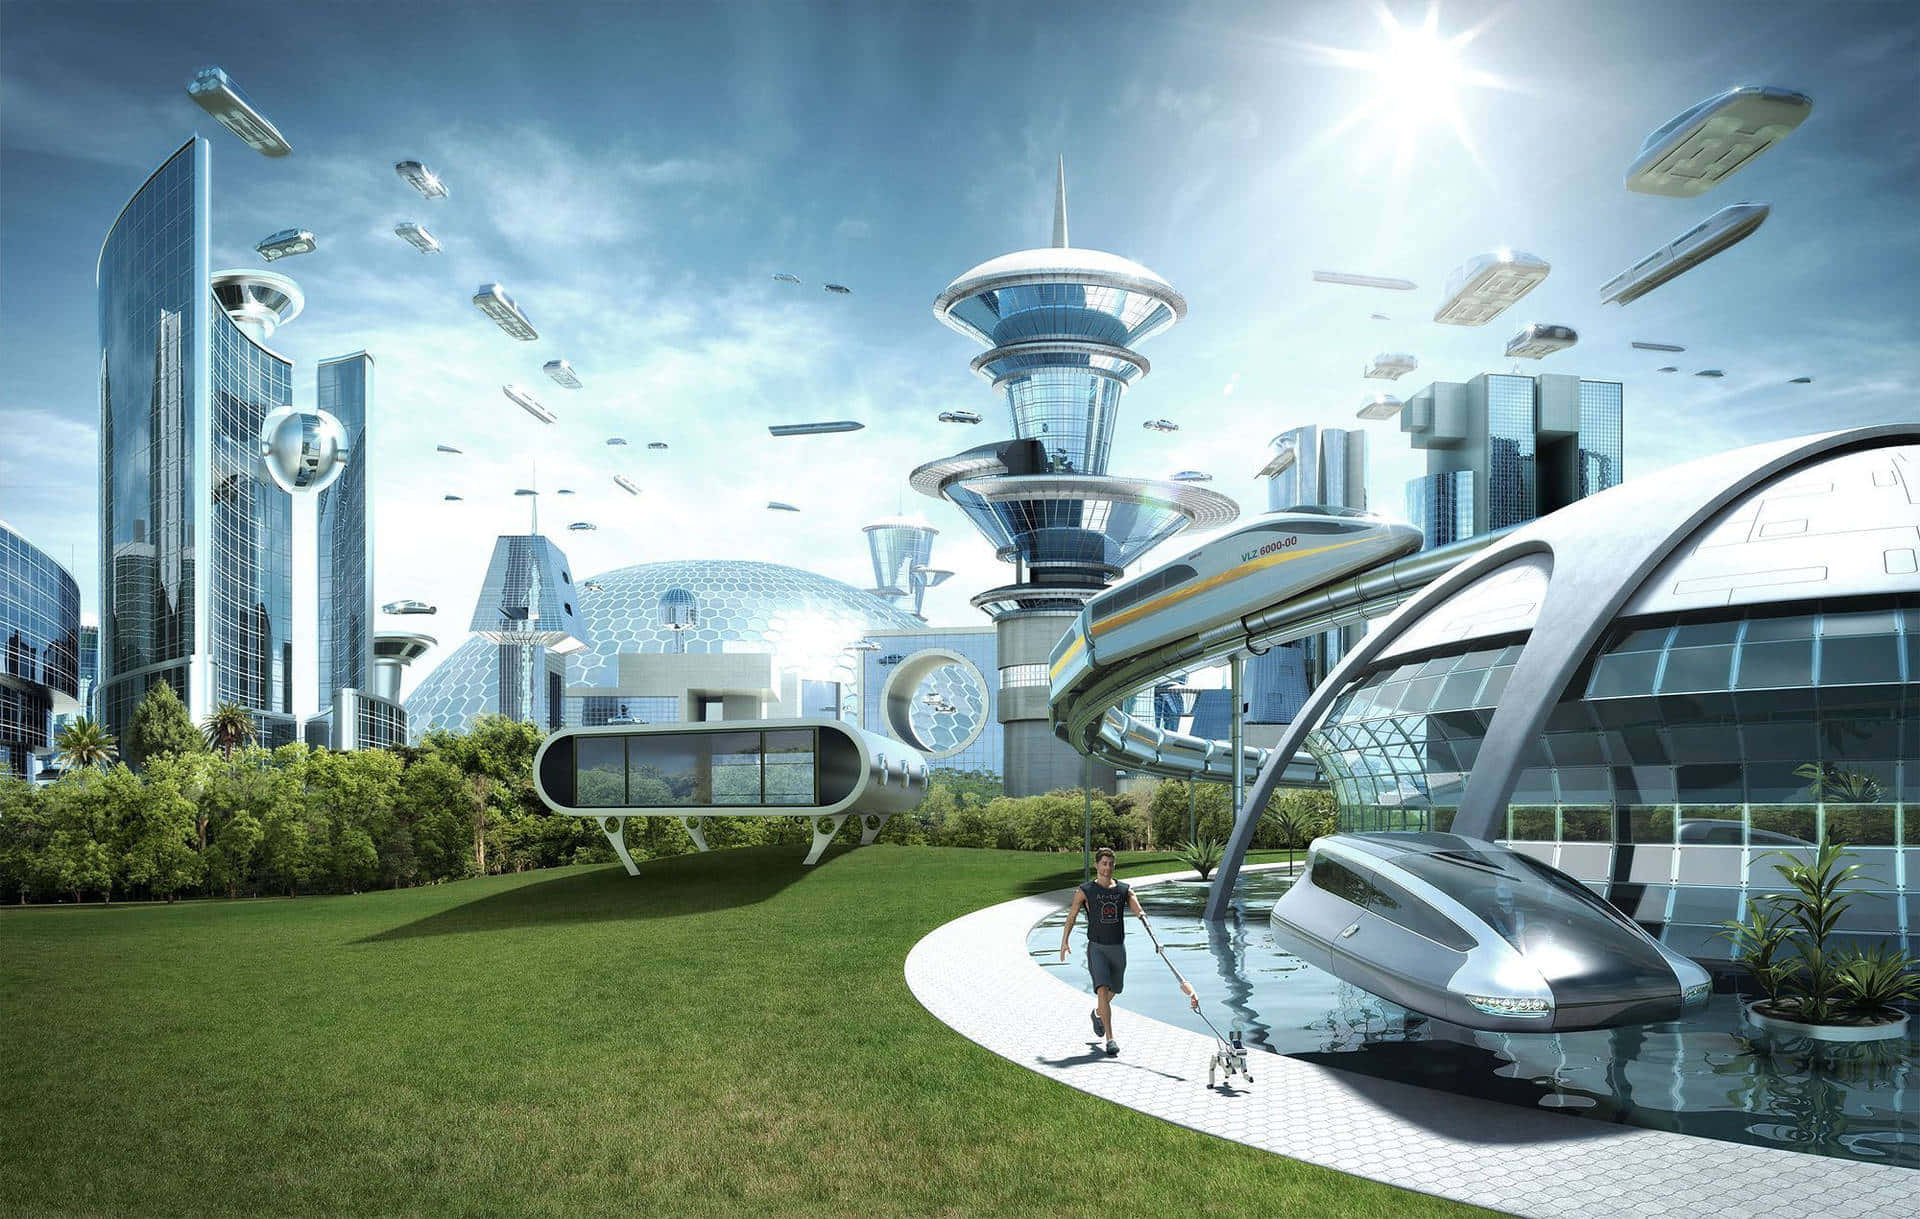 Futuristic City With Futuristic Buildings And Futuristic Cars